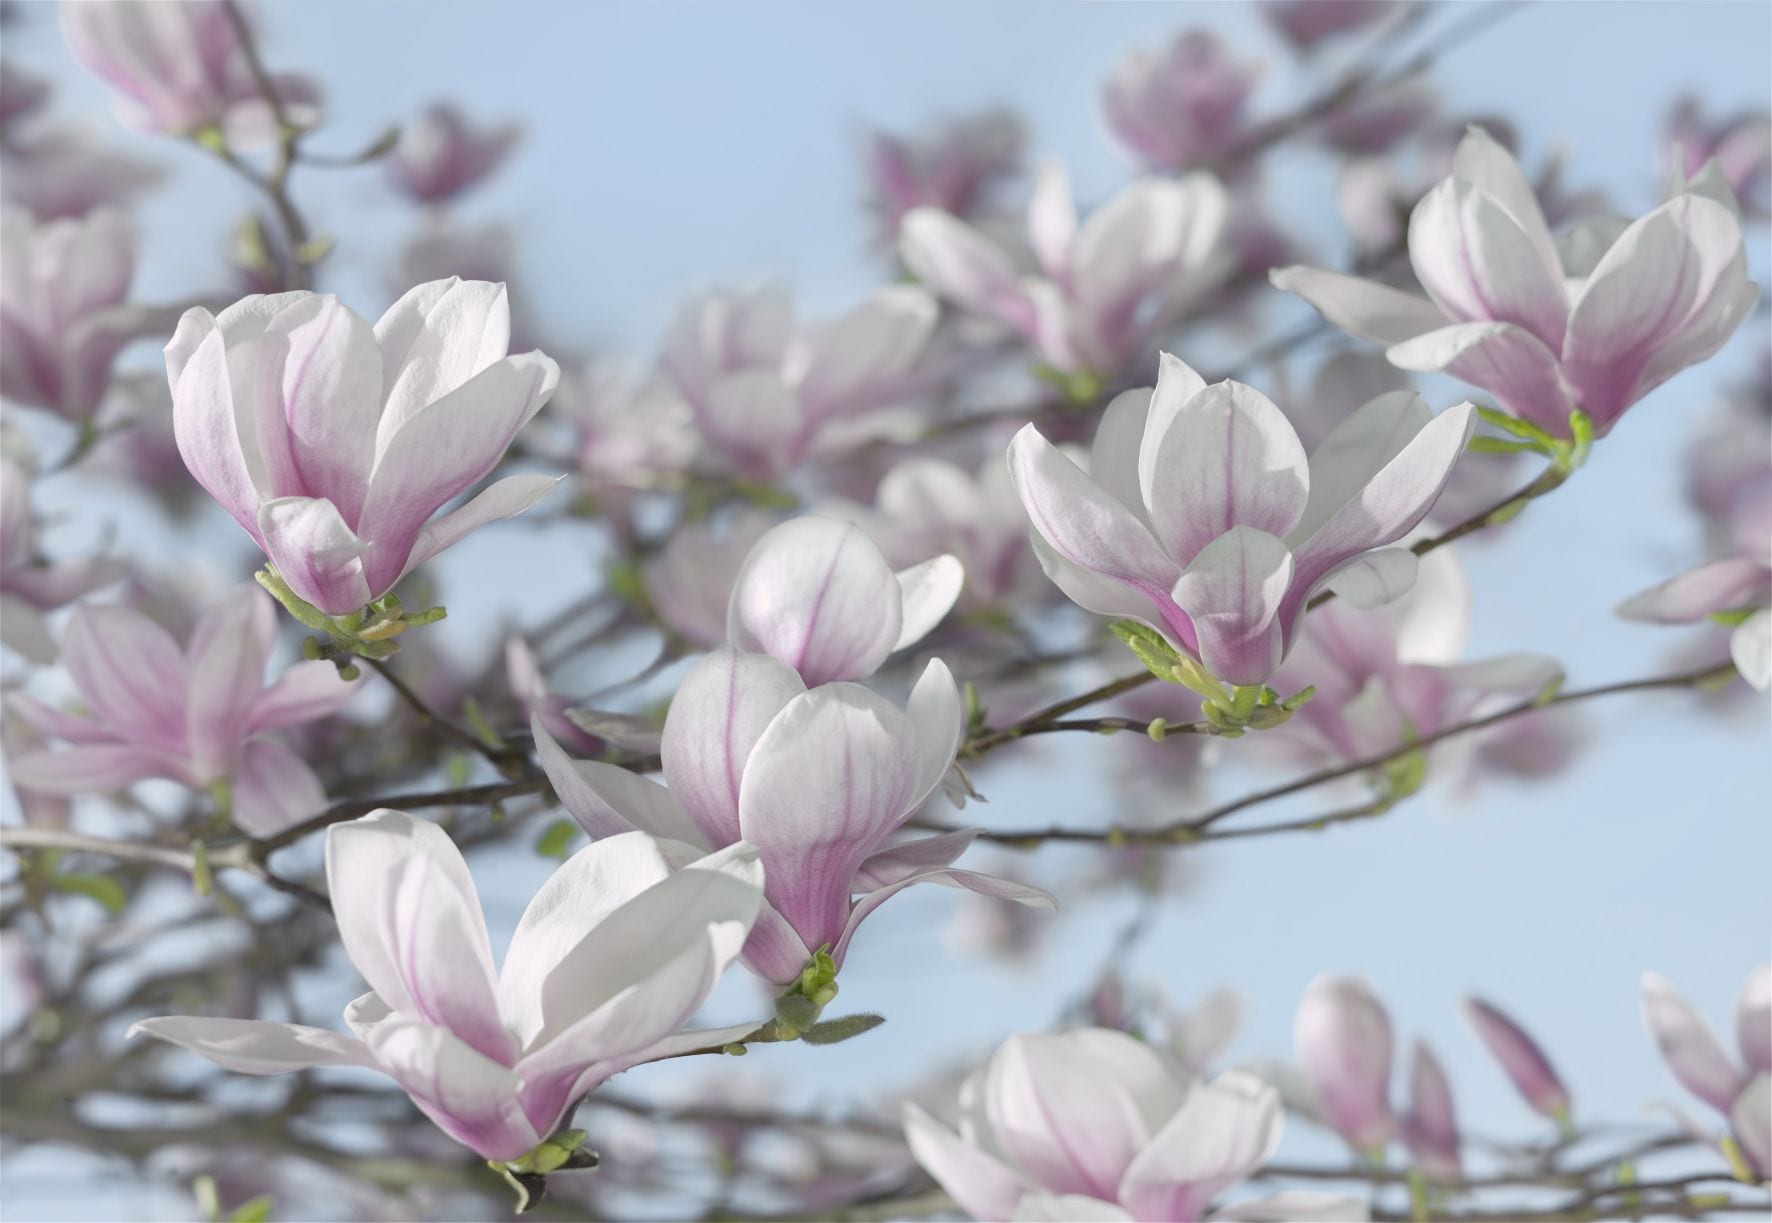 Precios mas bajos Malla fotomural fotomurales papel pintado naturaleza  flores magnolio floración 14n160vexxxl Aquí hay más opciones Artículos  promocionales